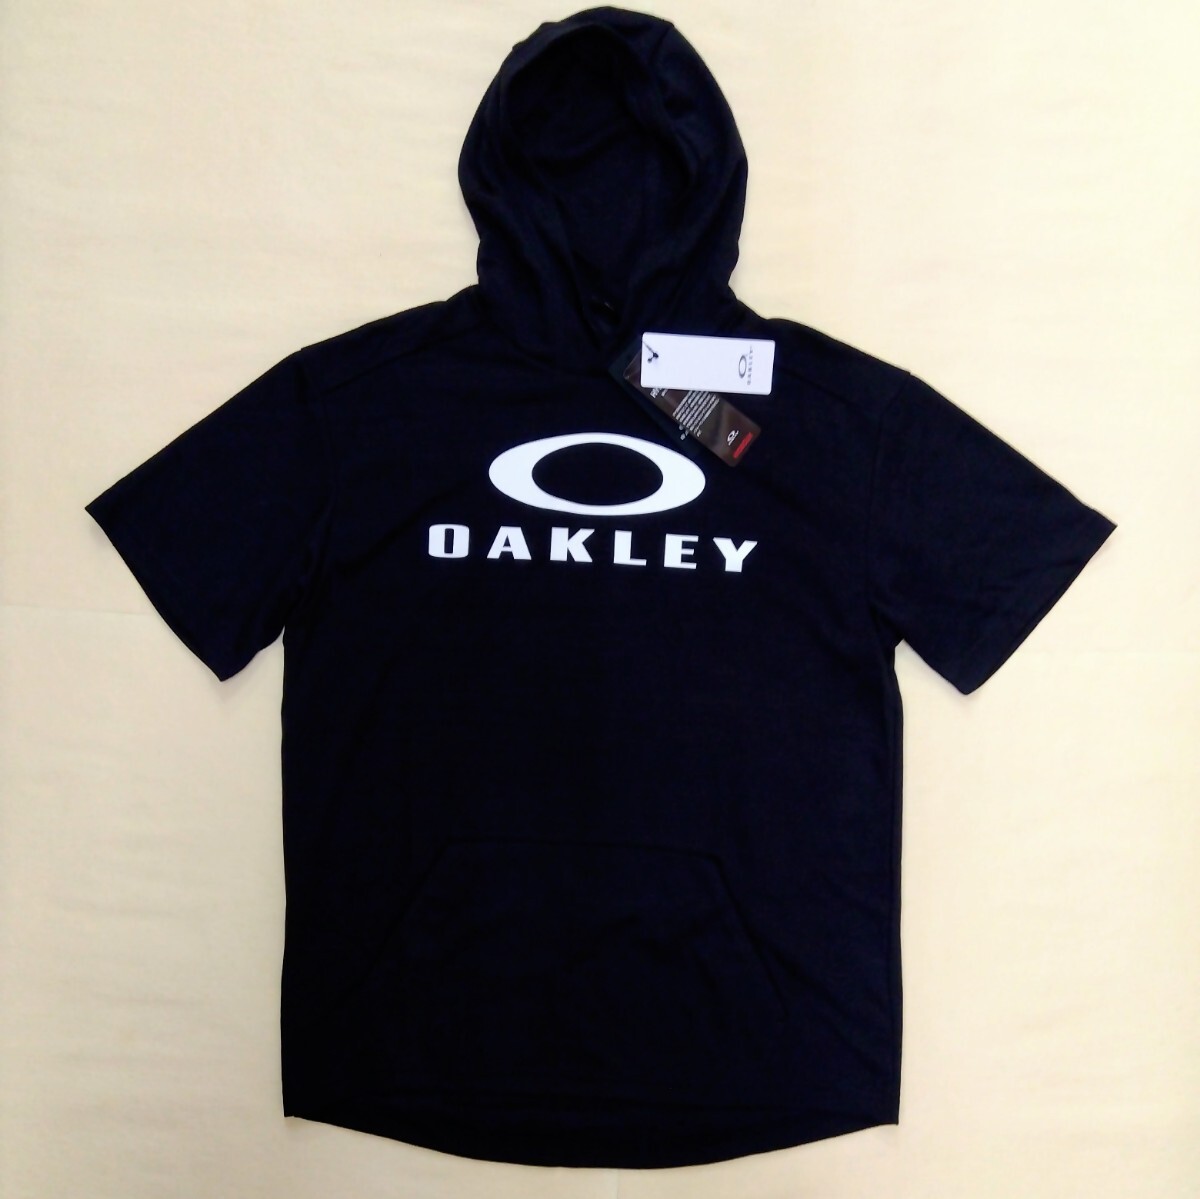 [新品] OAKLEY オークリー スウェット上下 セットアップ 上下セット 半袖パーカー 七分丈パンツ OAKLEYロゴ Lサイズ